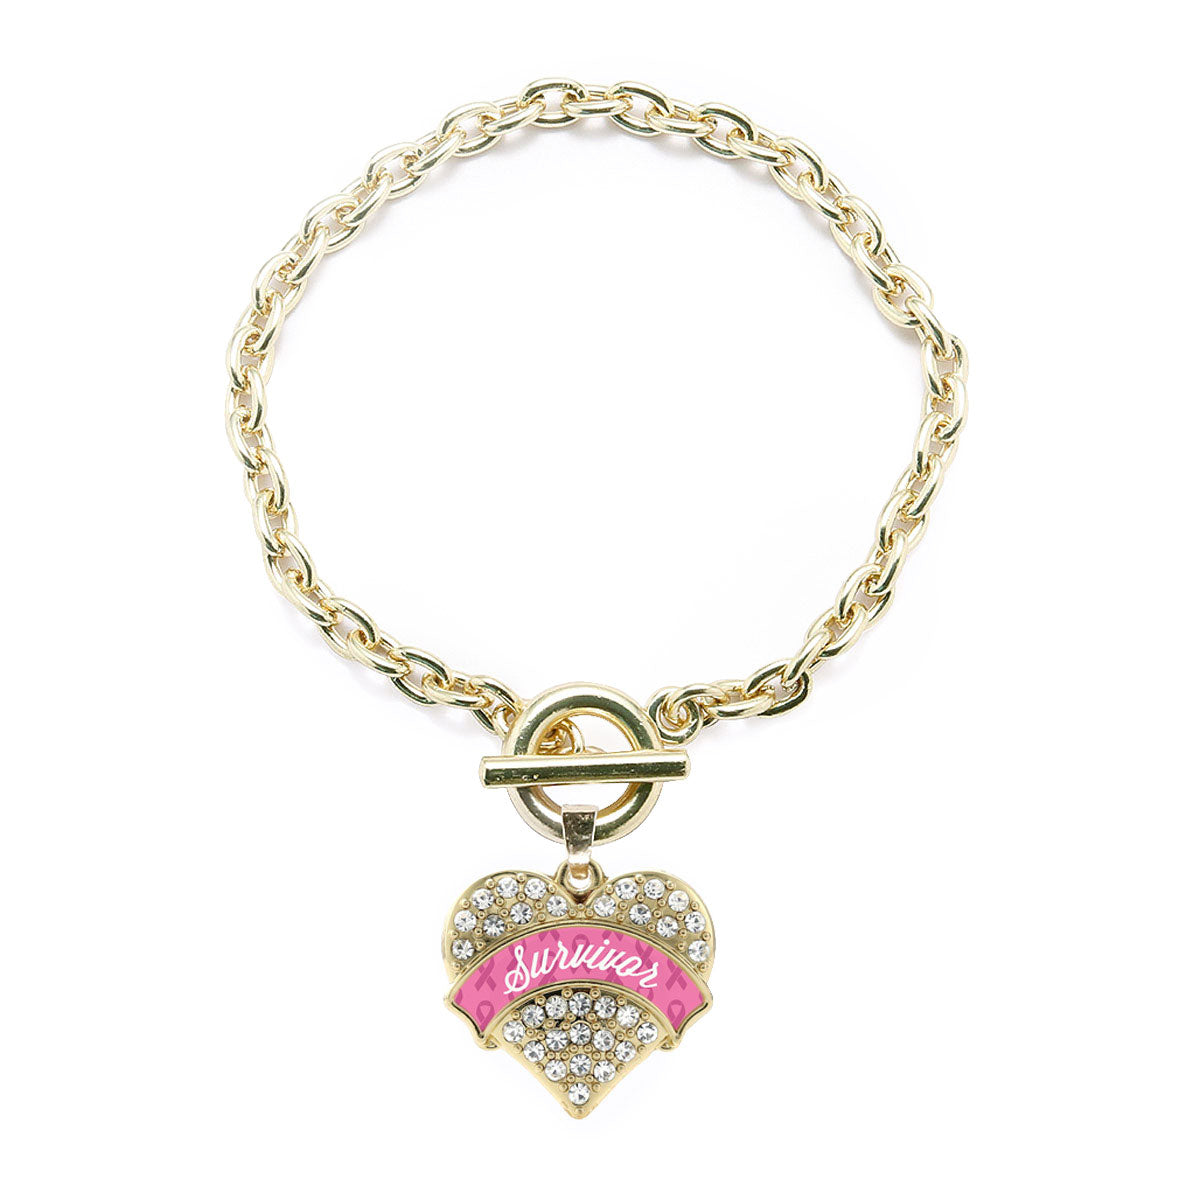 Gold Pink Survivor Pave Heart Charm Toggle Bracelet